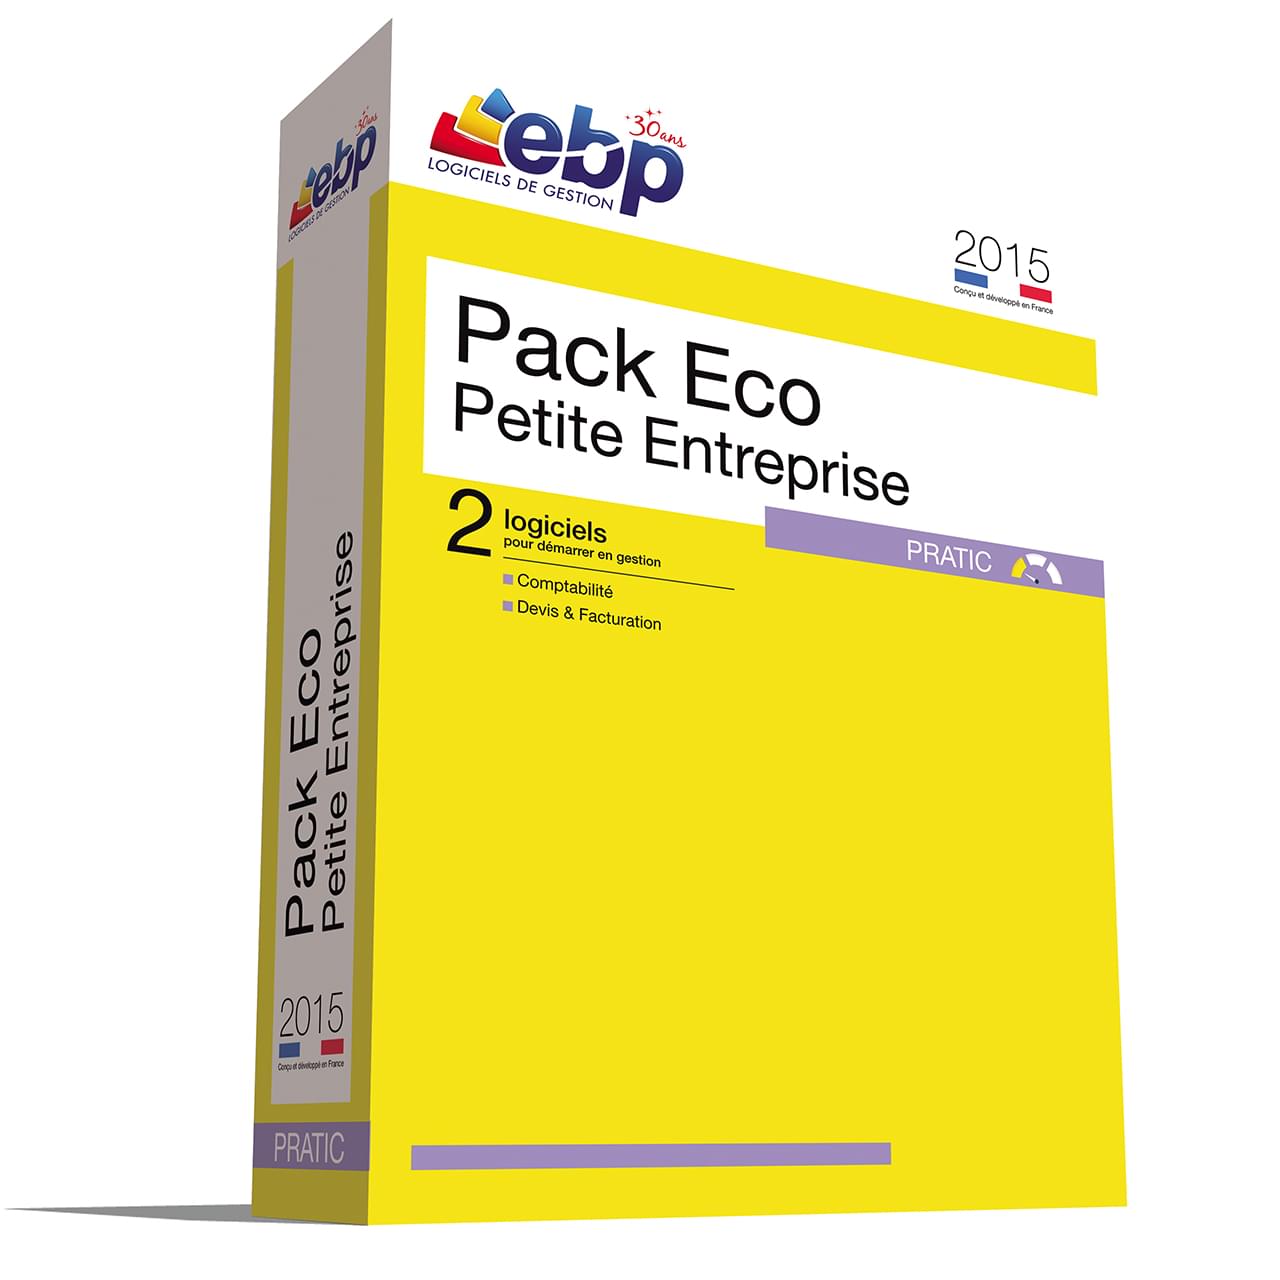 EBP Pack Eco Petite Entreprise Pratic 2015 - Logiciel application - 0